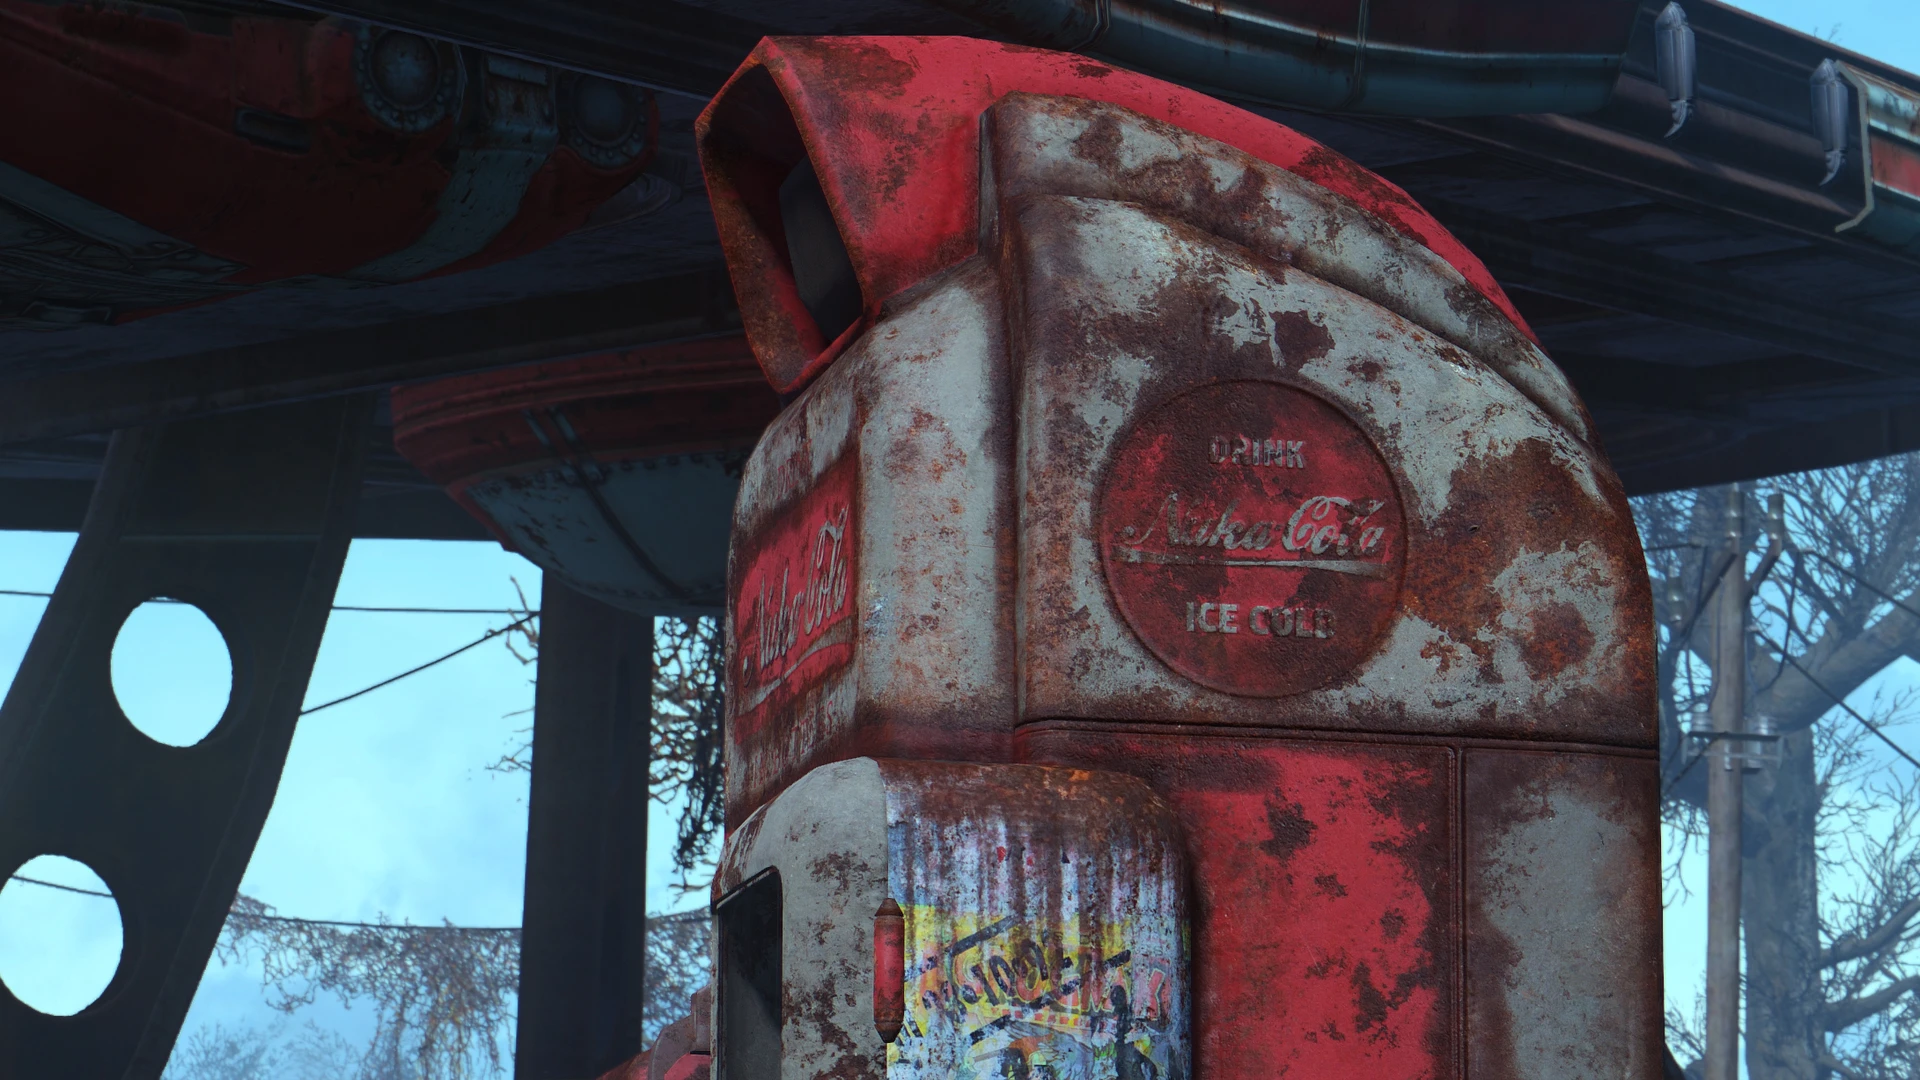 Fallout 4 nuka world завод по розливу напитков фото 74